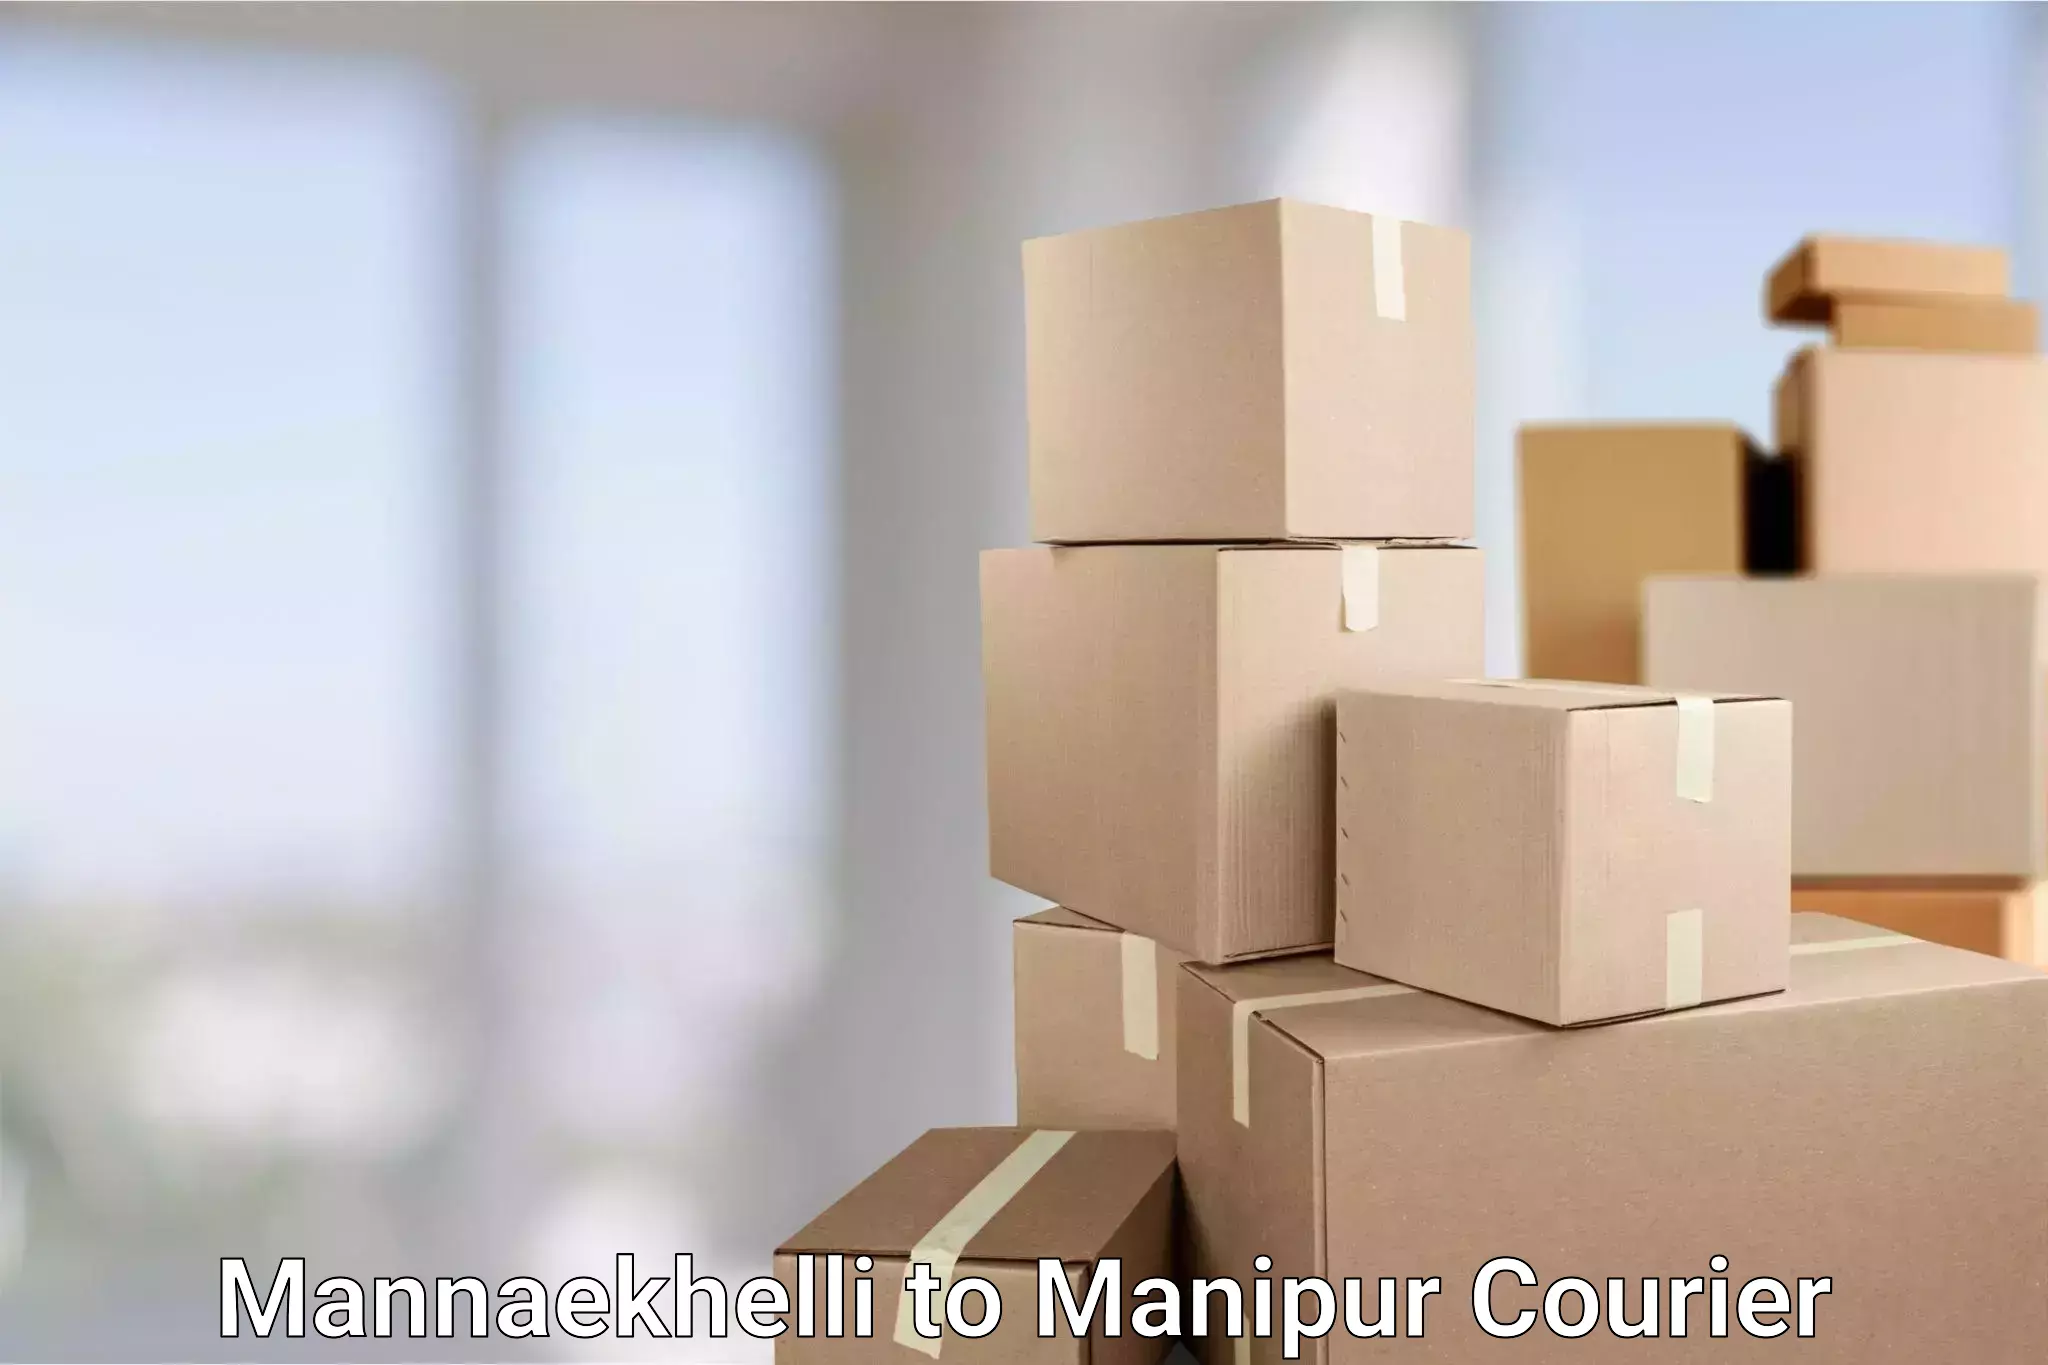 Global parcel delivery Mannaekhelli to Chandel